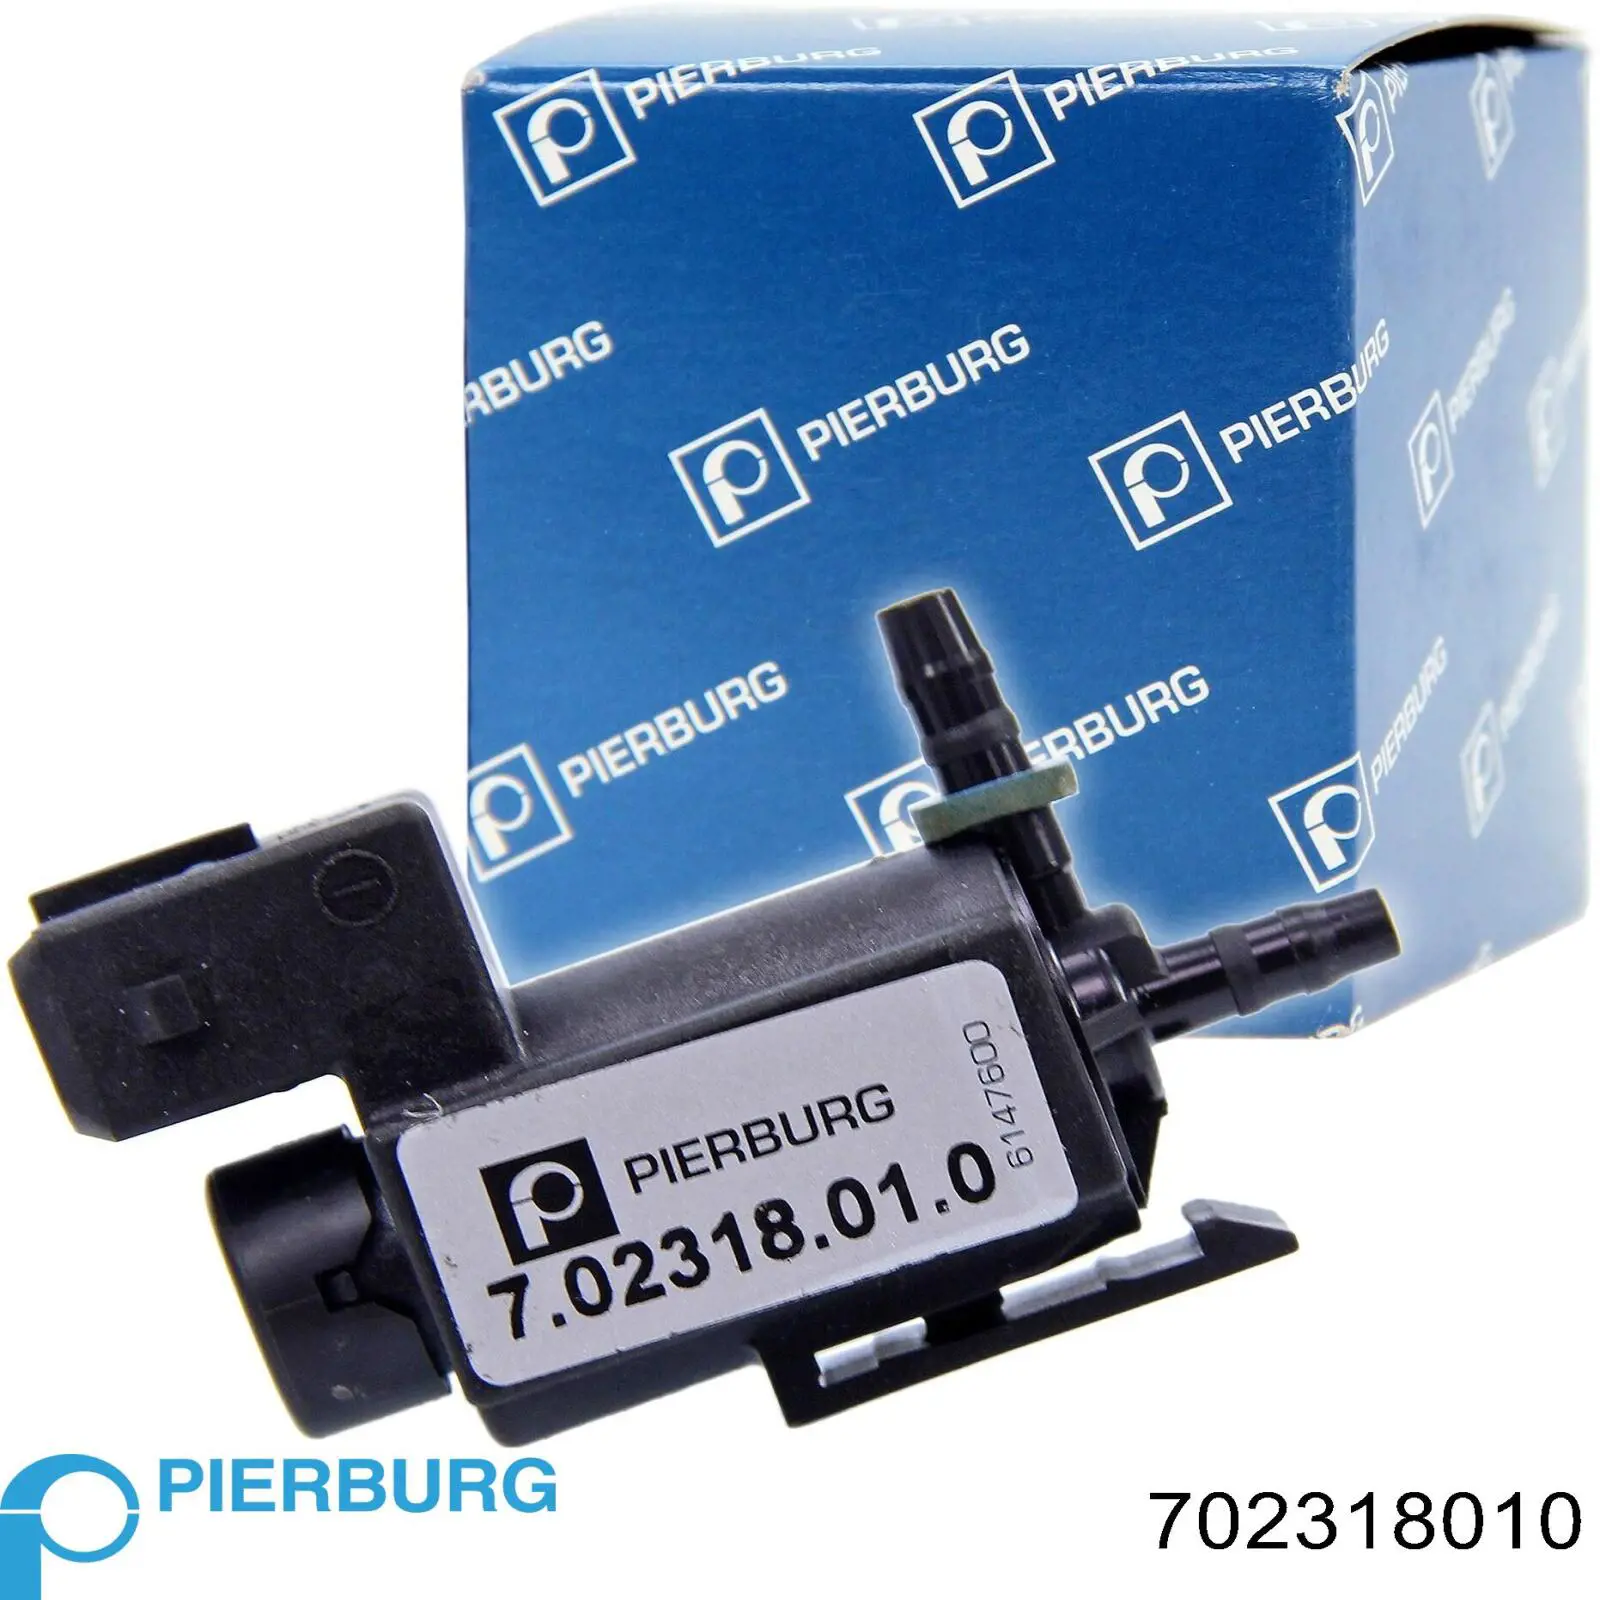 7.02318.01.0 Pierburg transductor de presión, control de gases de escape